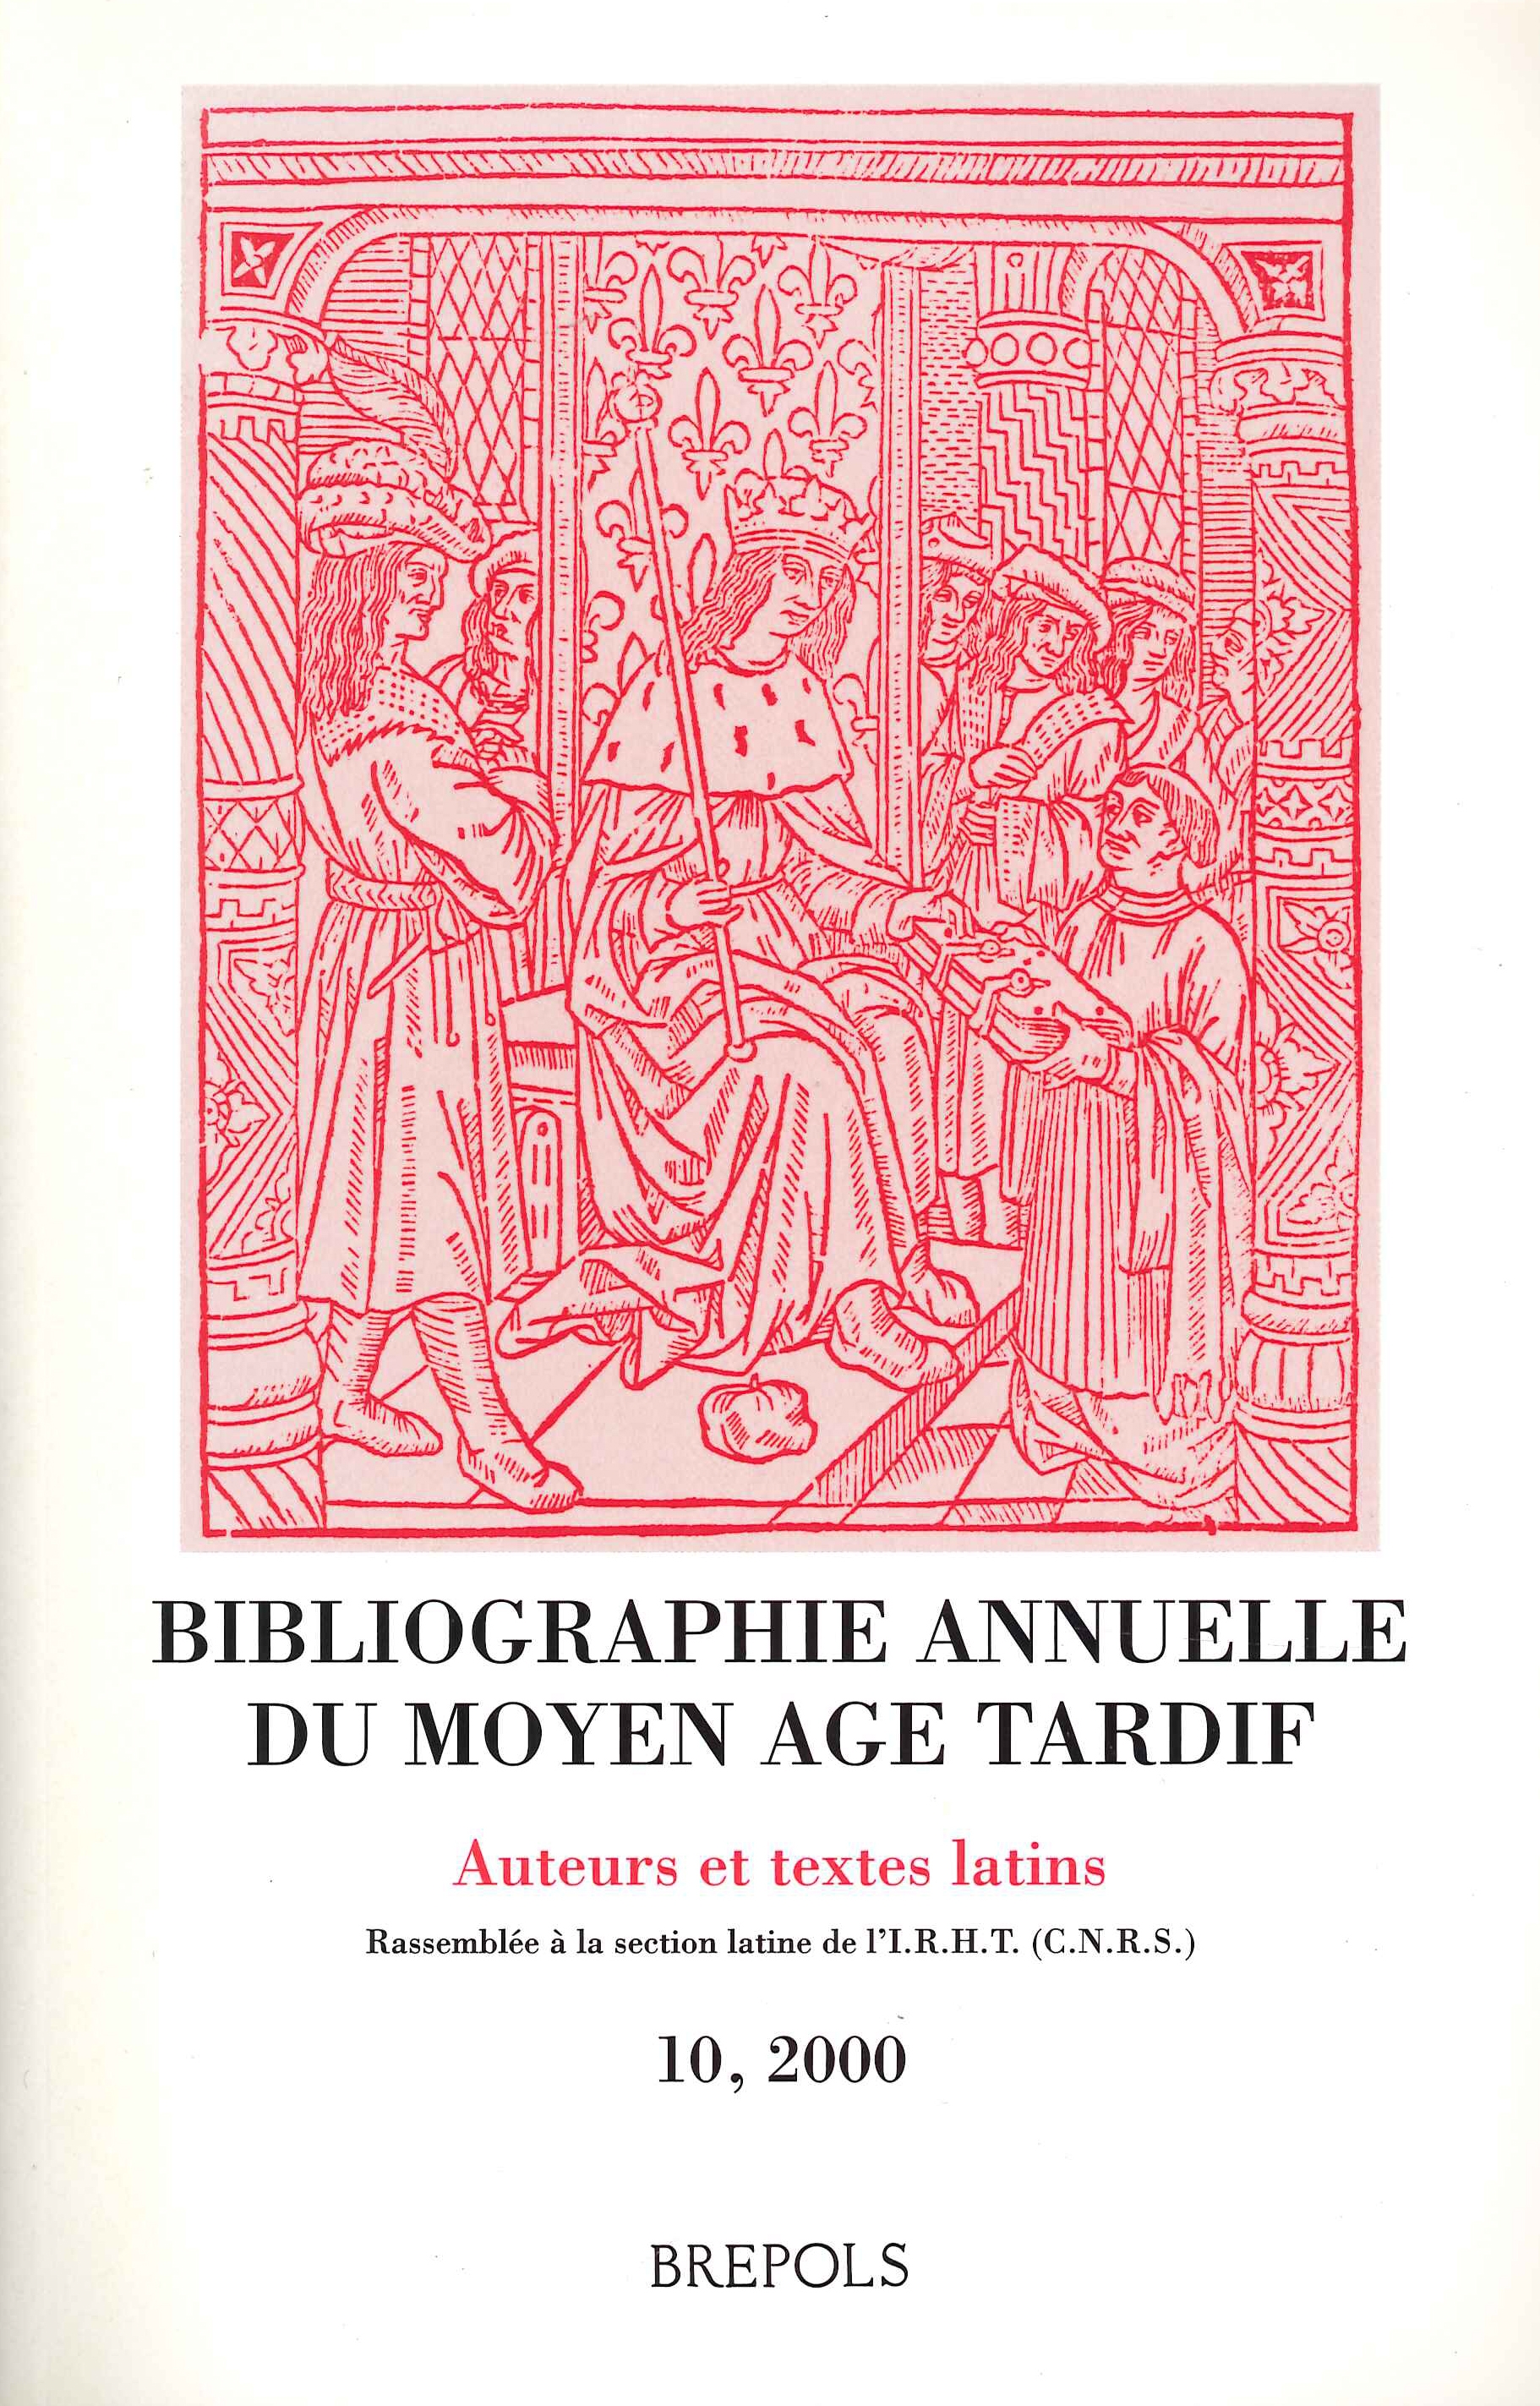 Bibliographie annuelle du moyen age tardif. Vol. 10. 2000.